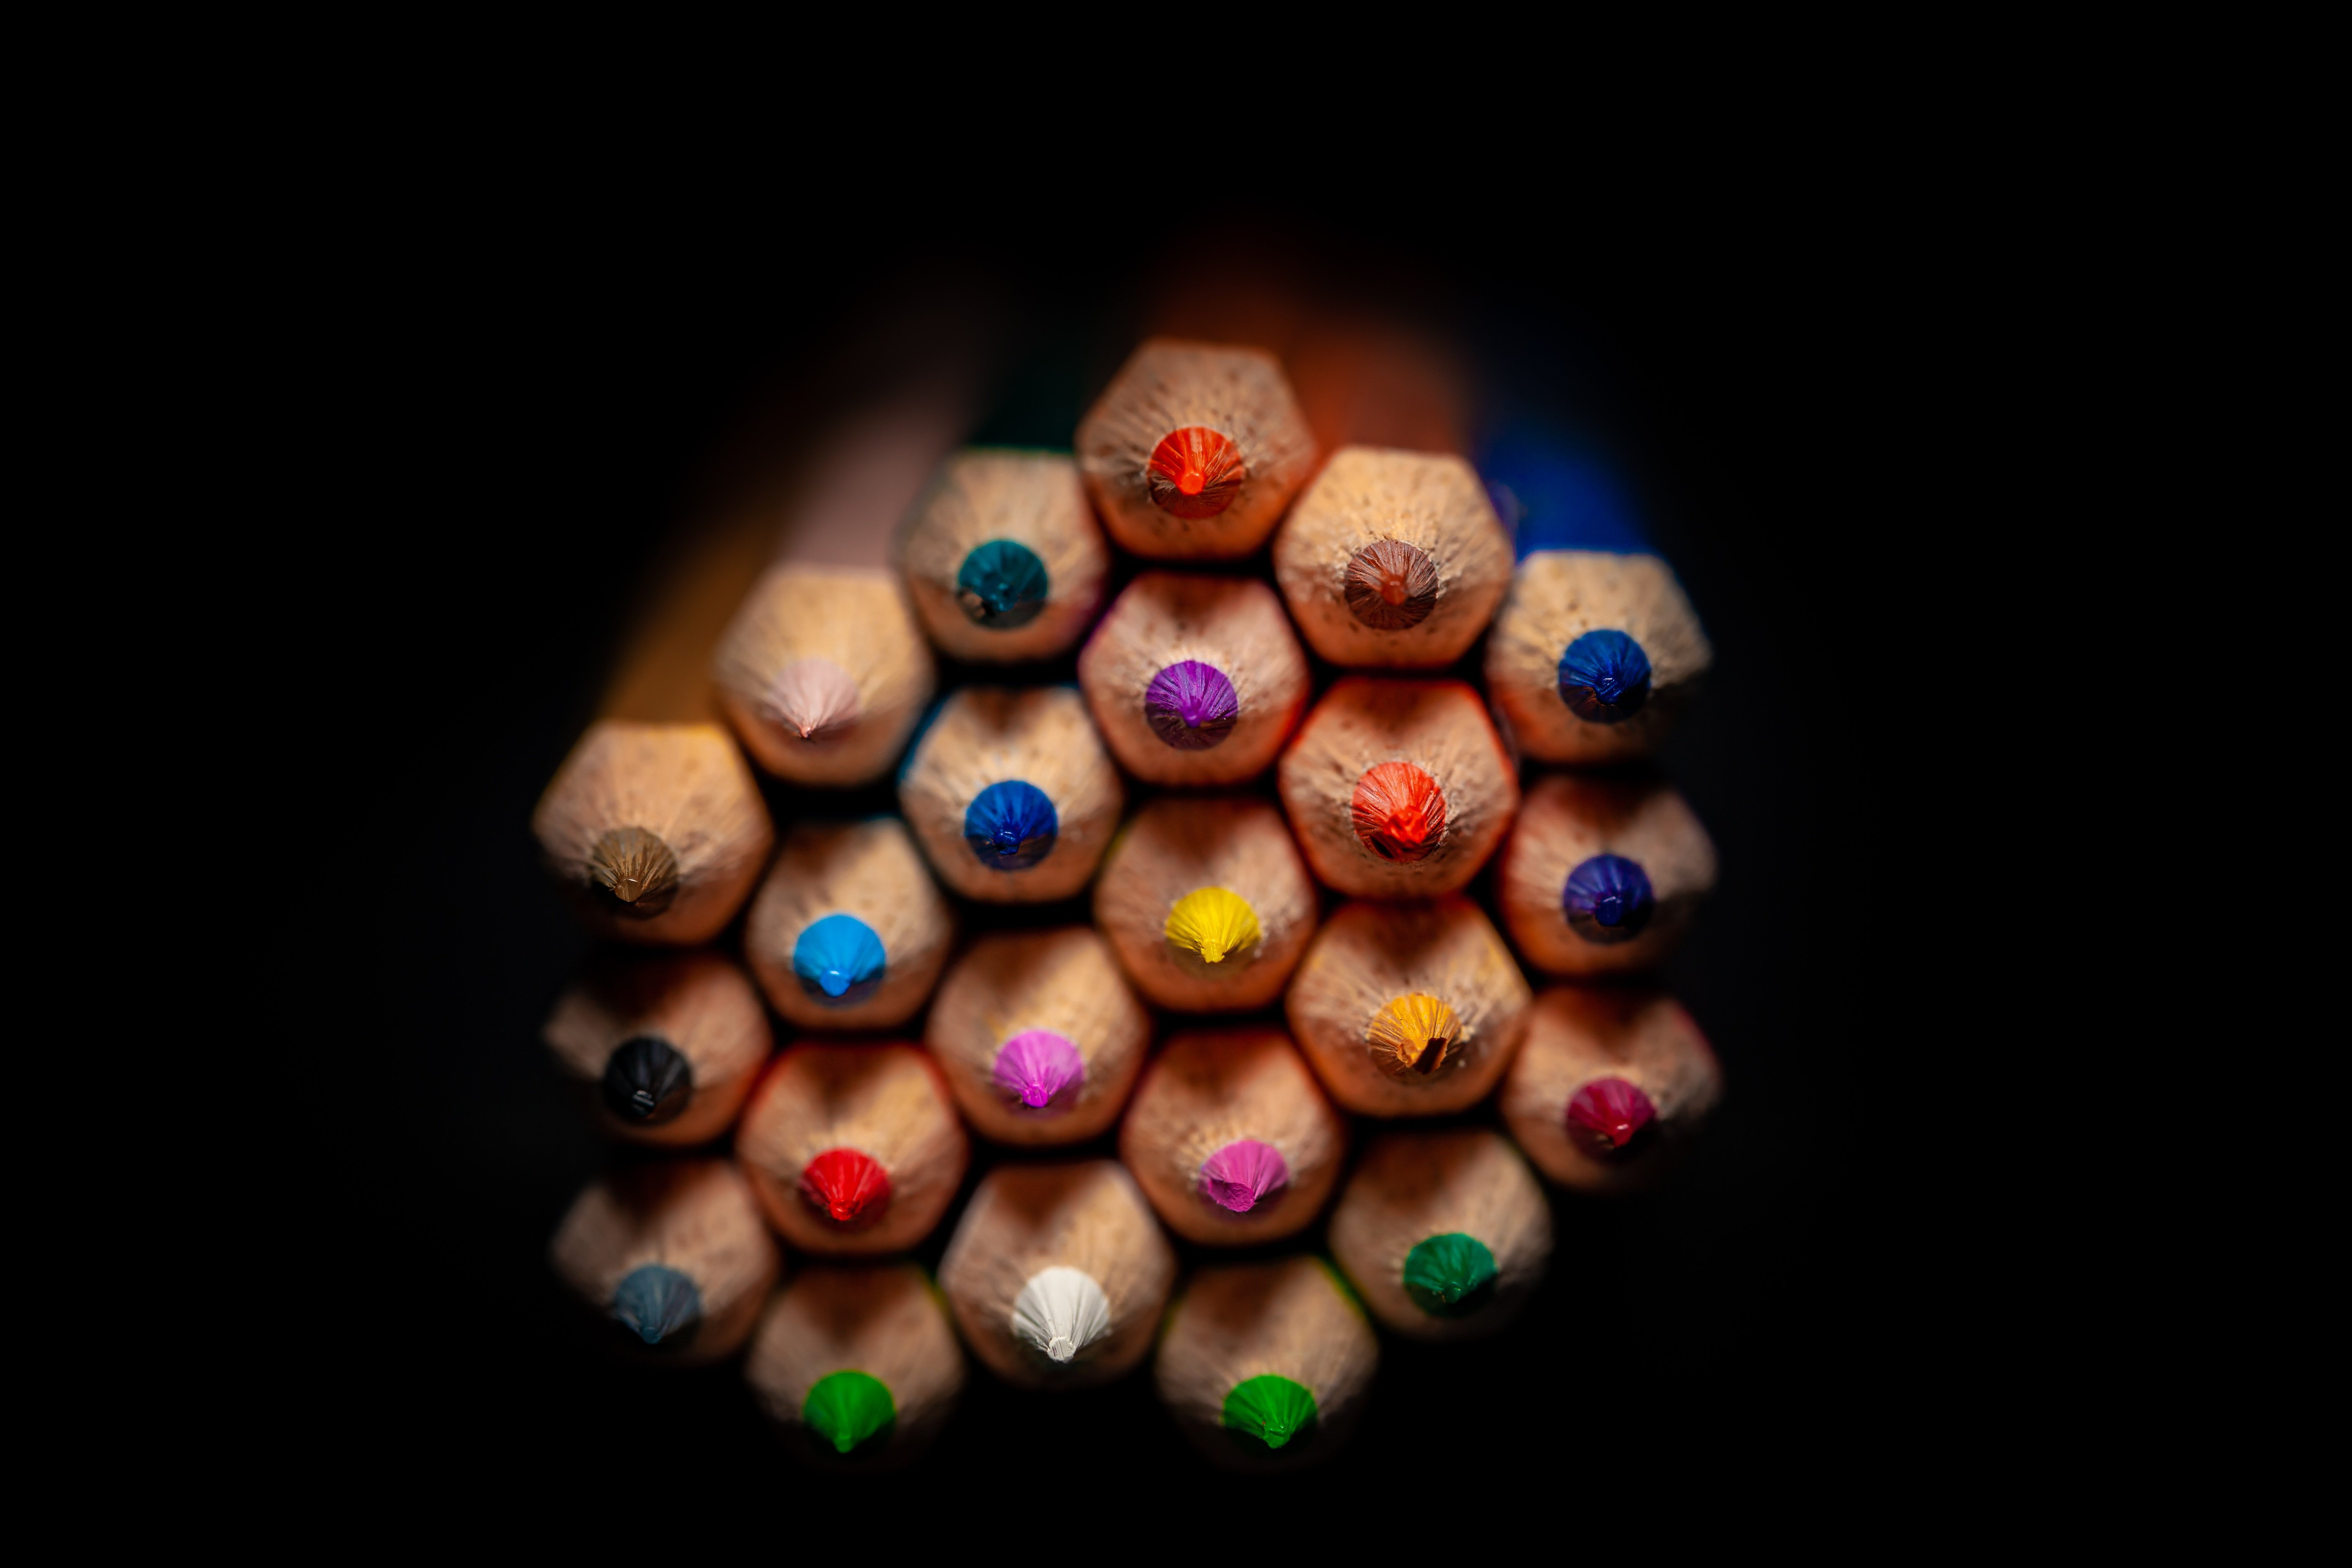 Фото Карандаши Разноцветные Много вблизи на черном фоне 5616x3744 карандаш карандаша карандашей Черный фон Крупным планом